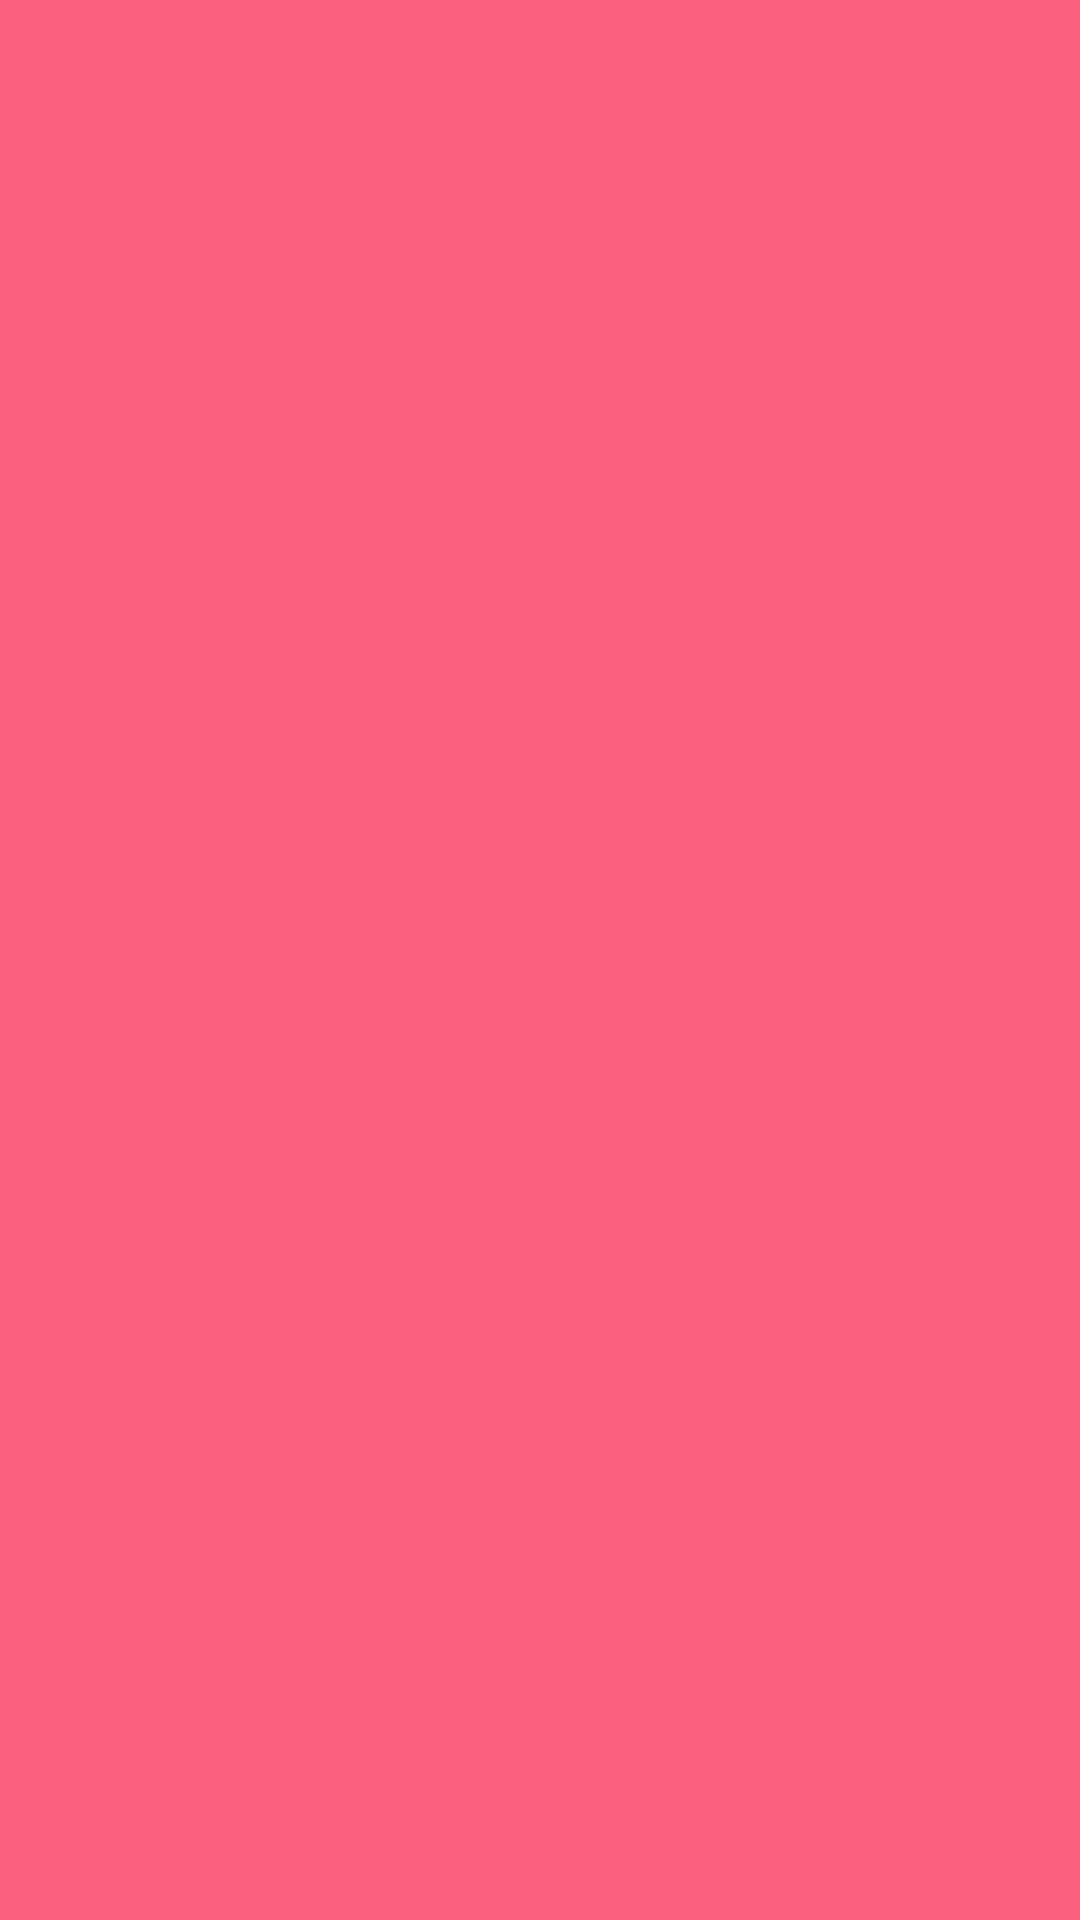 1080x1920 Brink Pink Solid Color Background